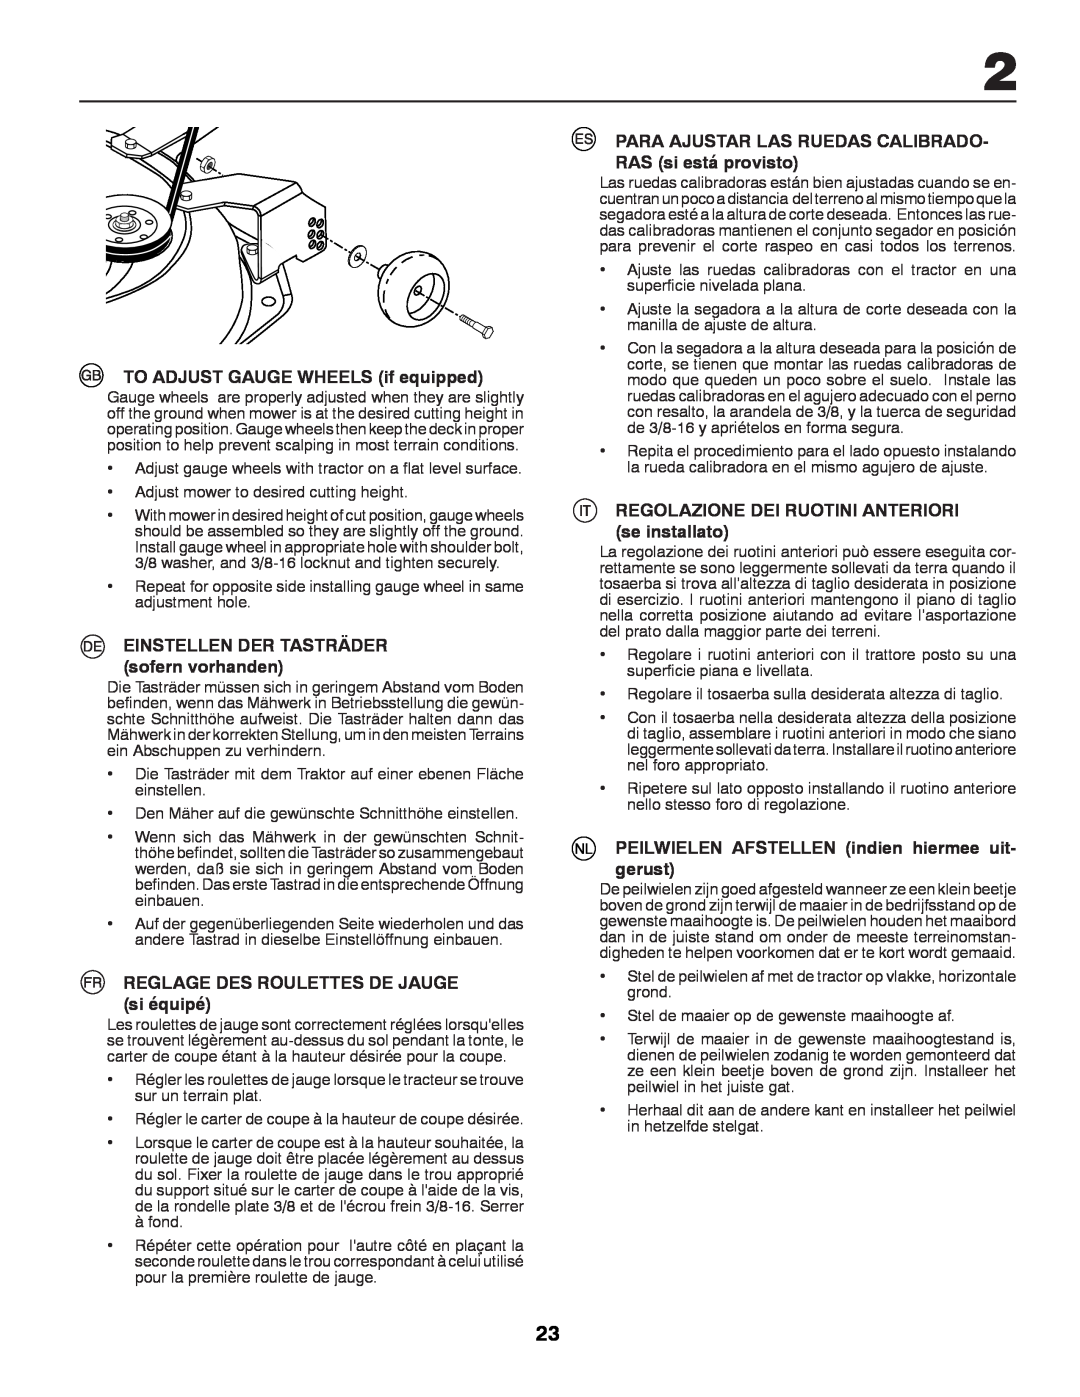 Partner Tech P12597RB instruction manual TO ADJUST GAUGE WHEELS if equipped, EINSTELLEN DER TASTRÄDER sofern vorhanden 